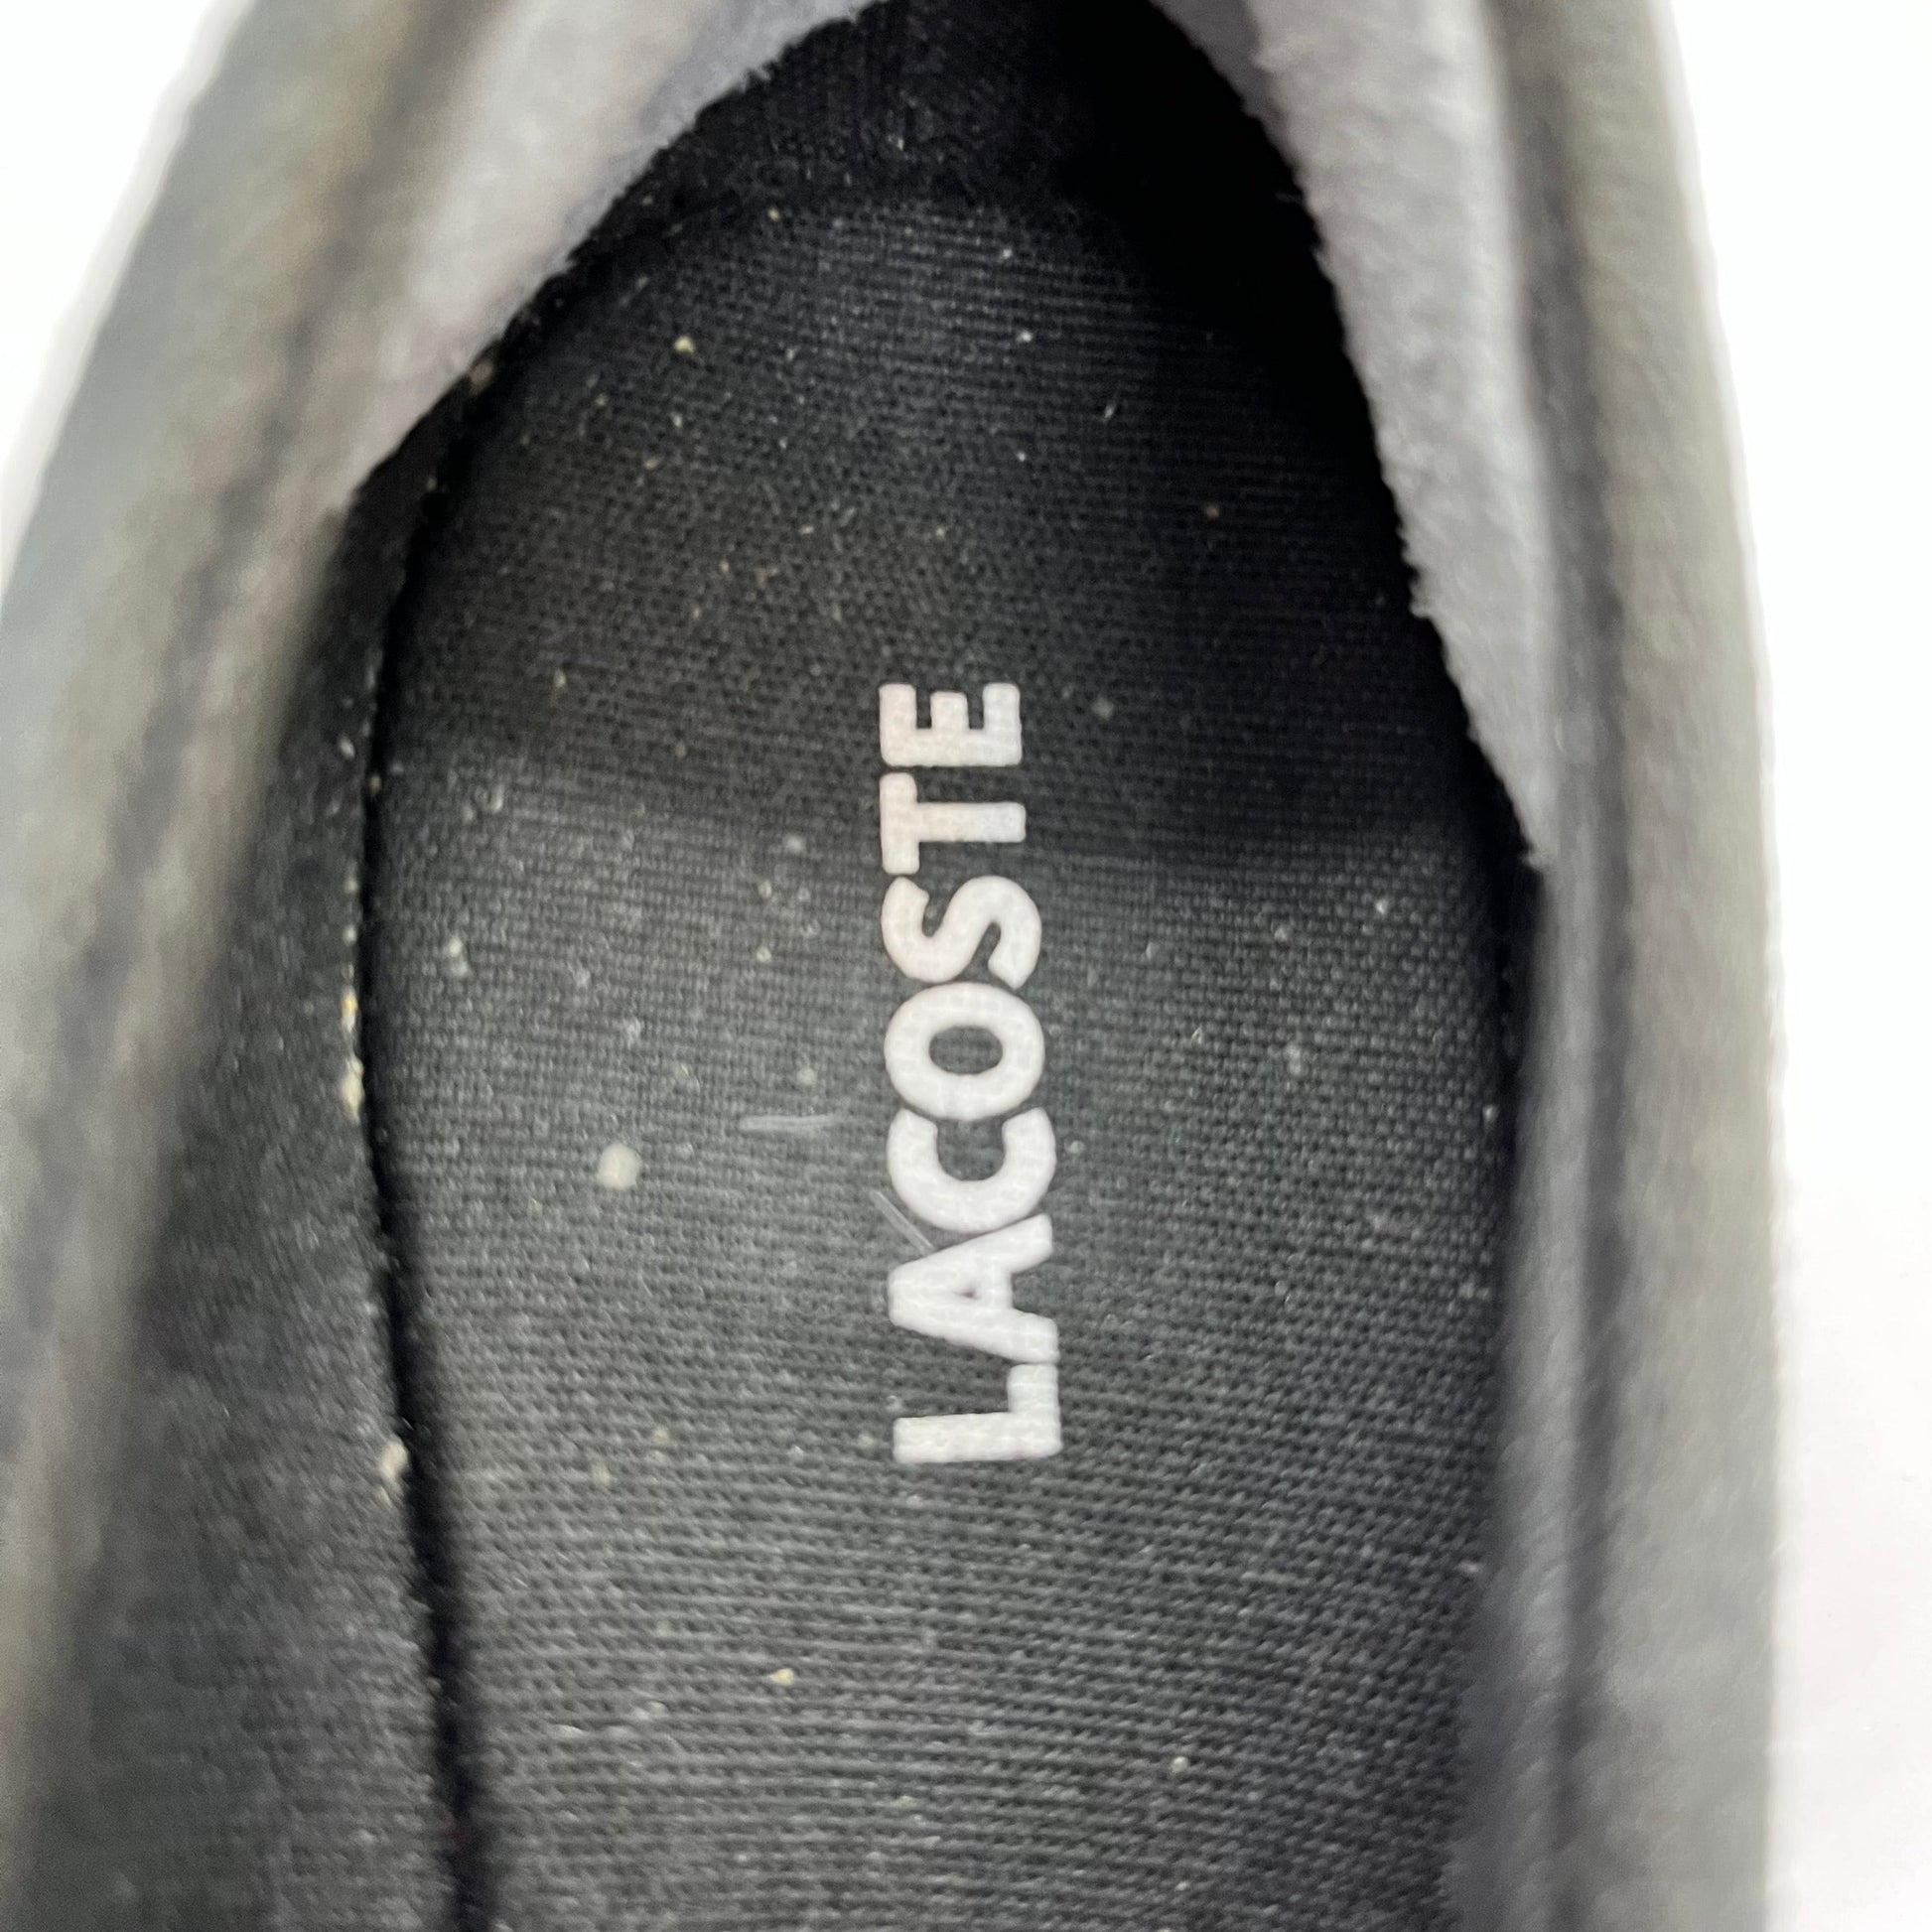 Lacoste - Shoes Size 23Cm